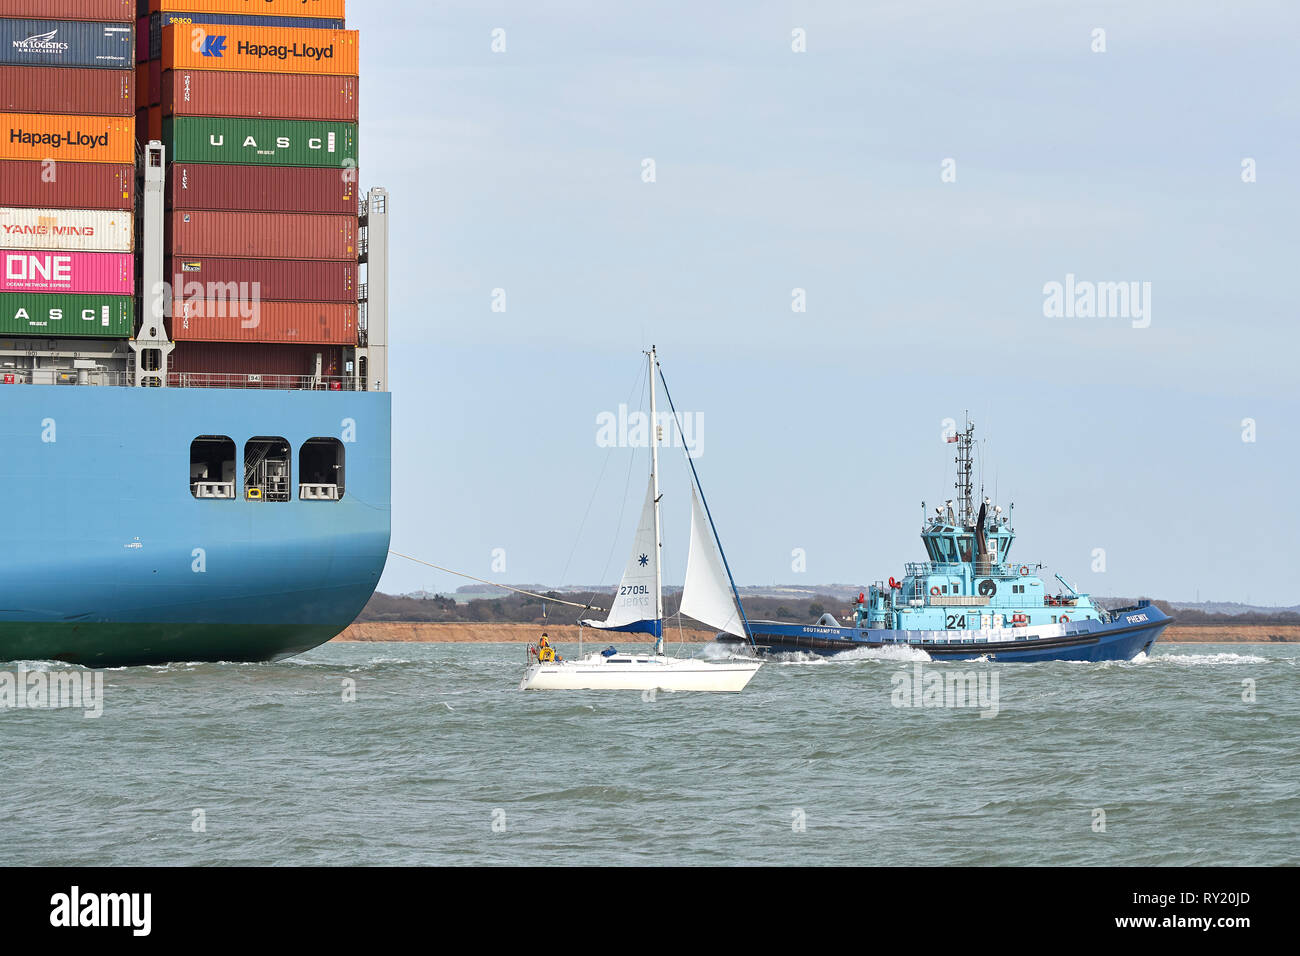 Le petit bateau à voile, DRIFTER, passe à proximité de la porte-conteneurs géant, MOL, hommage à son entrée dans le Port de Southampton après un voyage de 26 jours. Banque D'Images